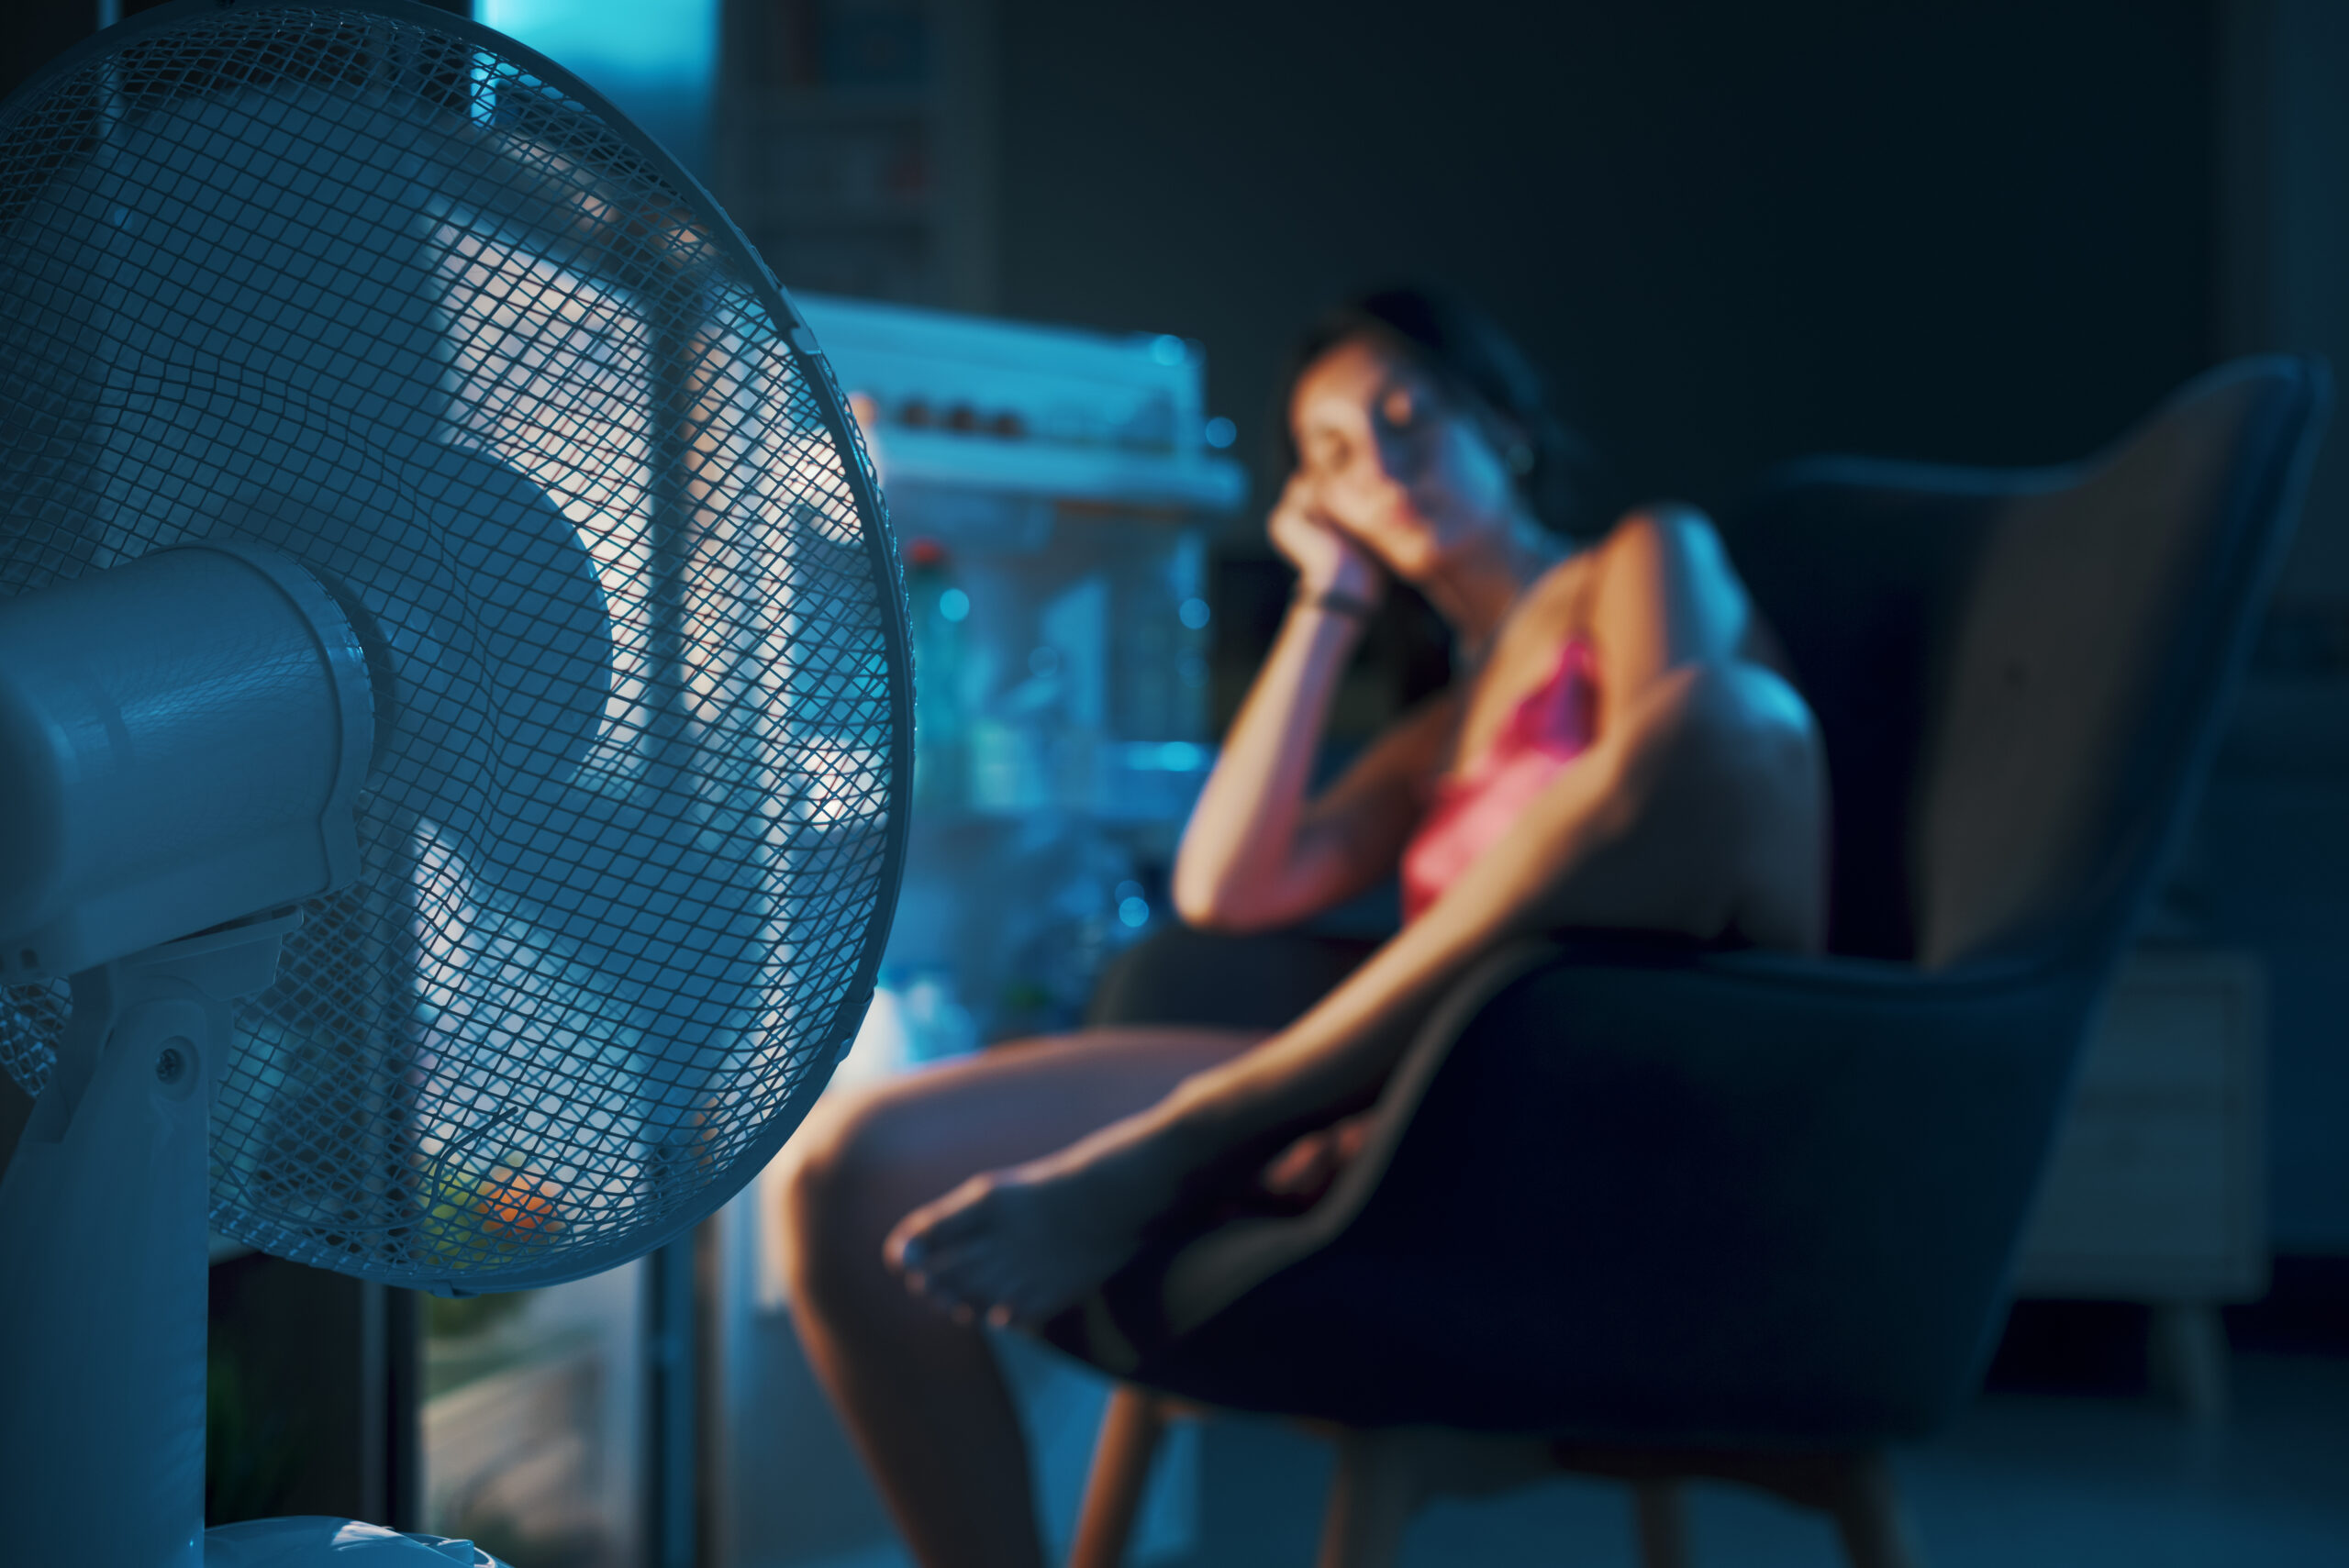 Femme épuisée souffrant de la chaleur pendant la canicule estivale, elle est assise devant le réfrigérateur ouvert et se rafraîchit